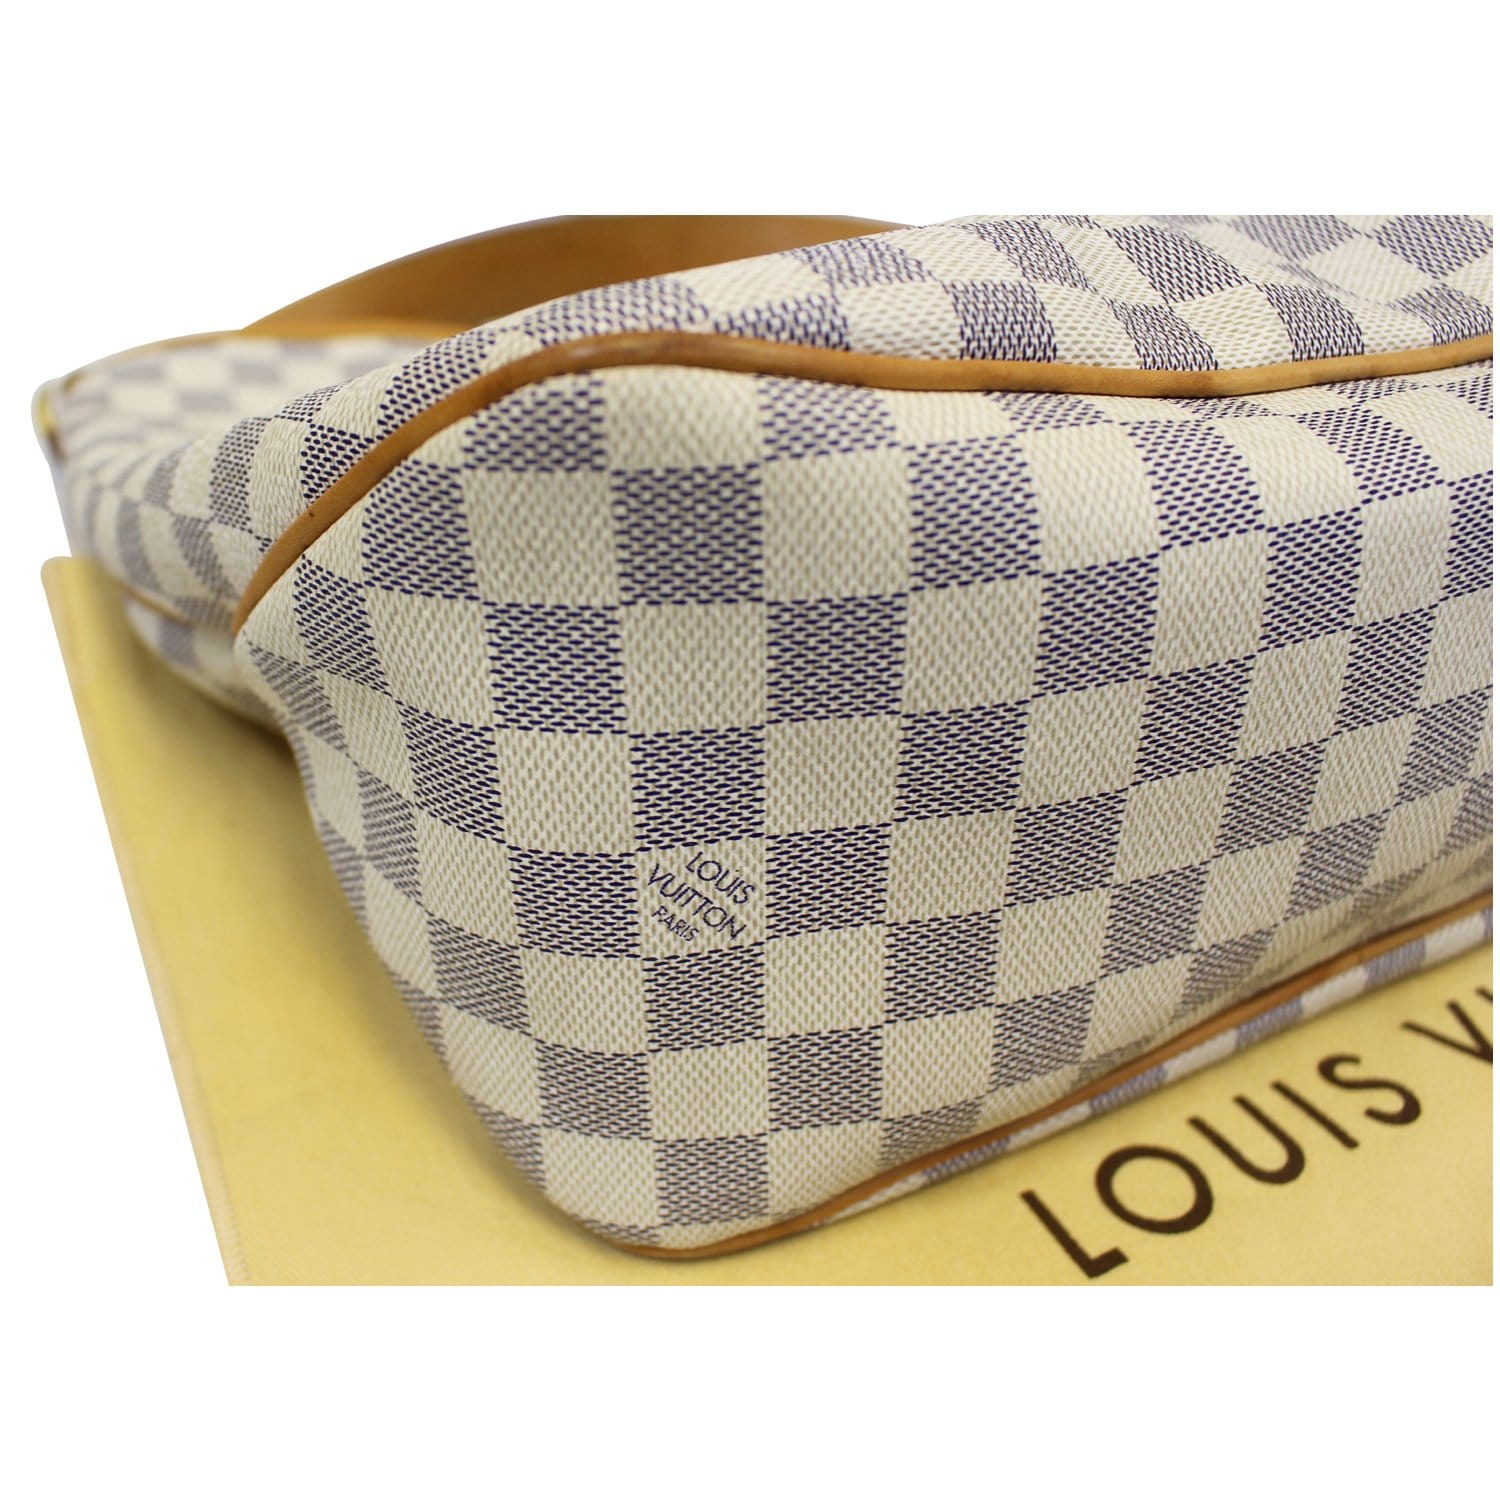 Louis Vuitton Damier Azur Canvas Delightful NM MM Bag - Consigned Designs